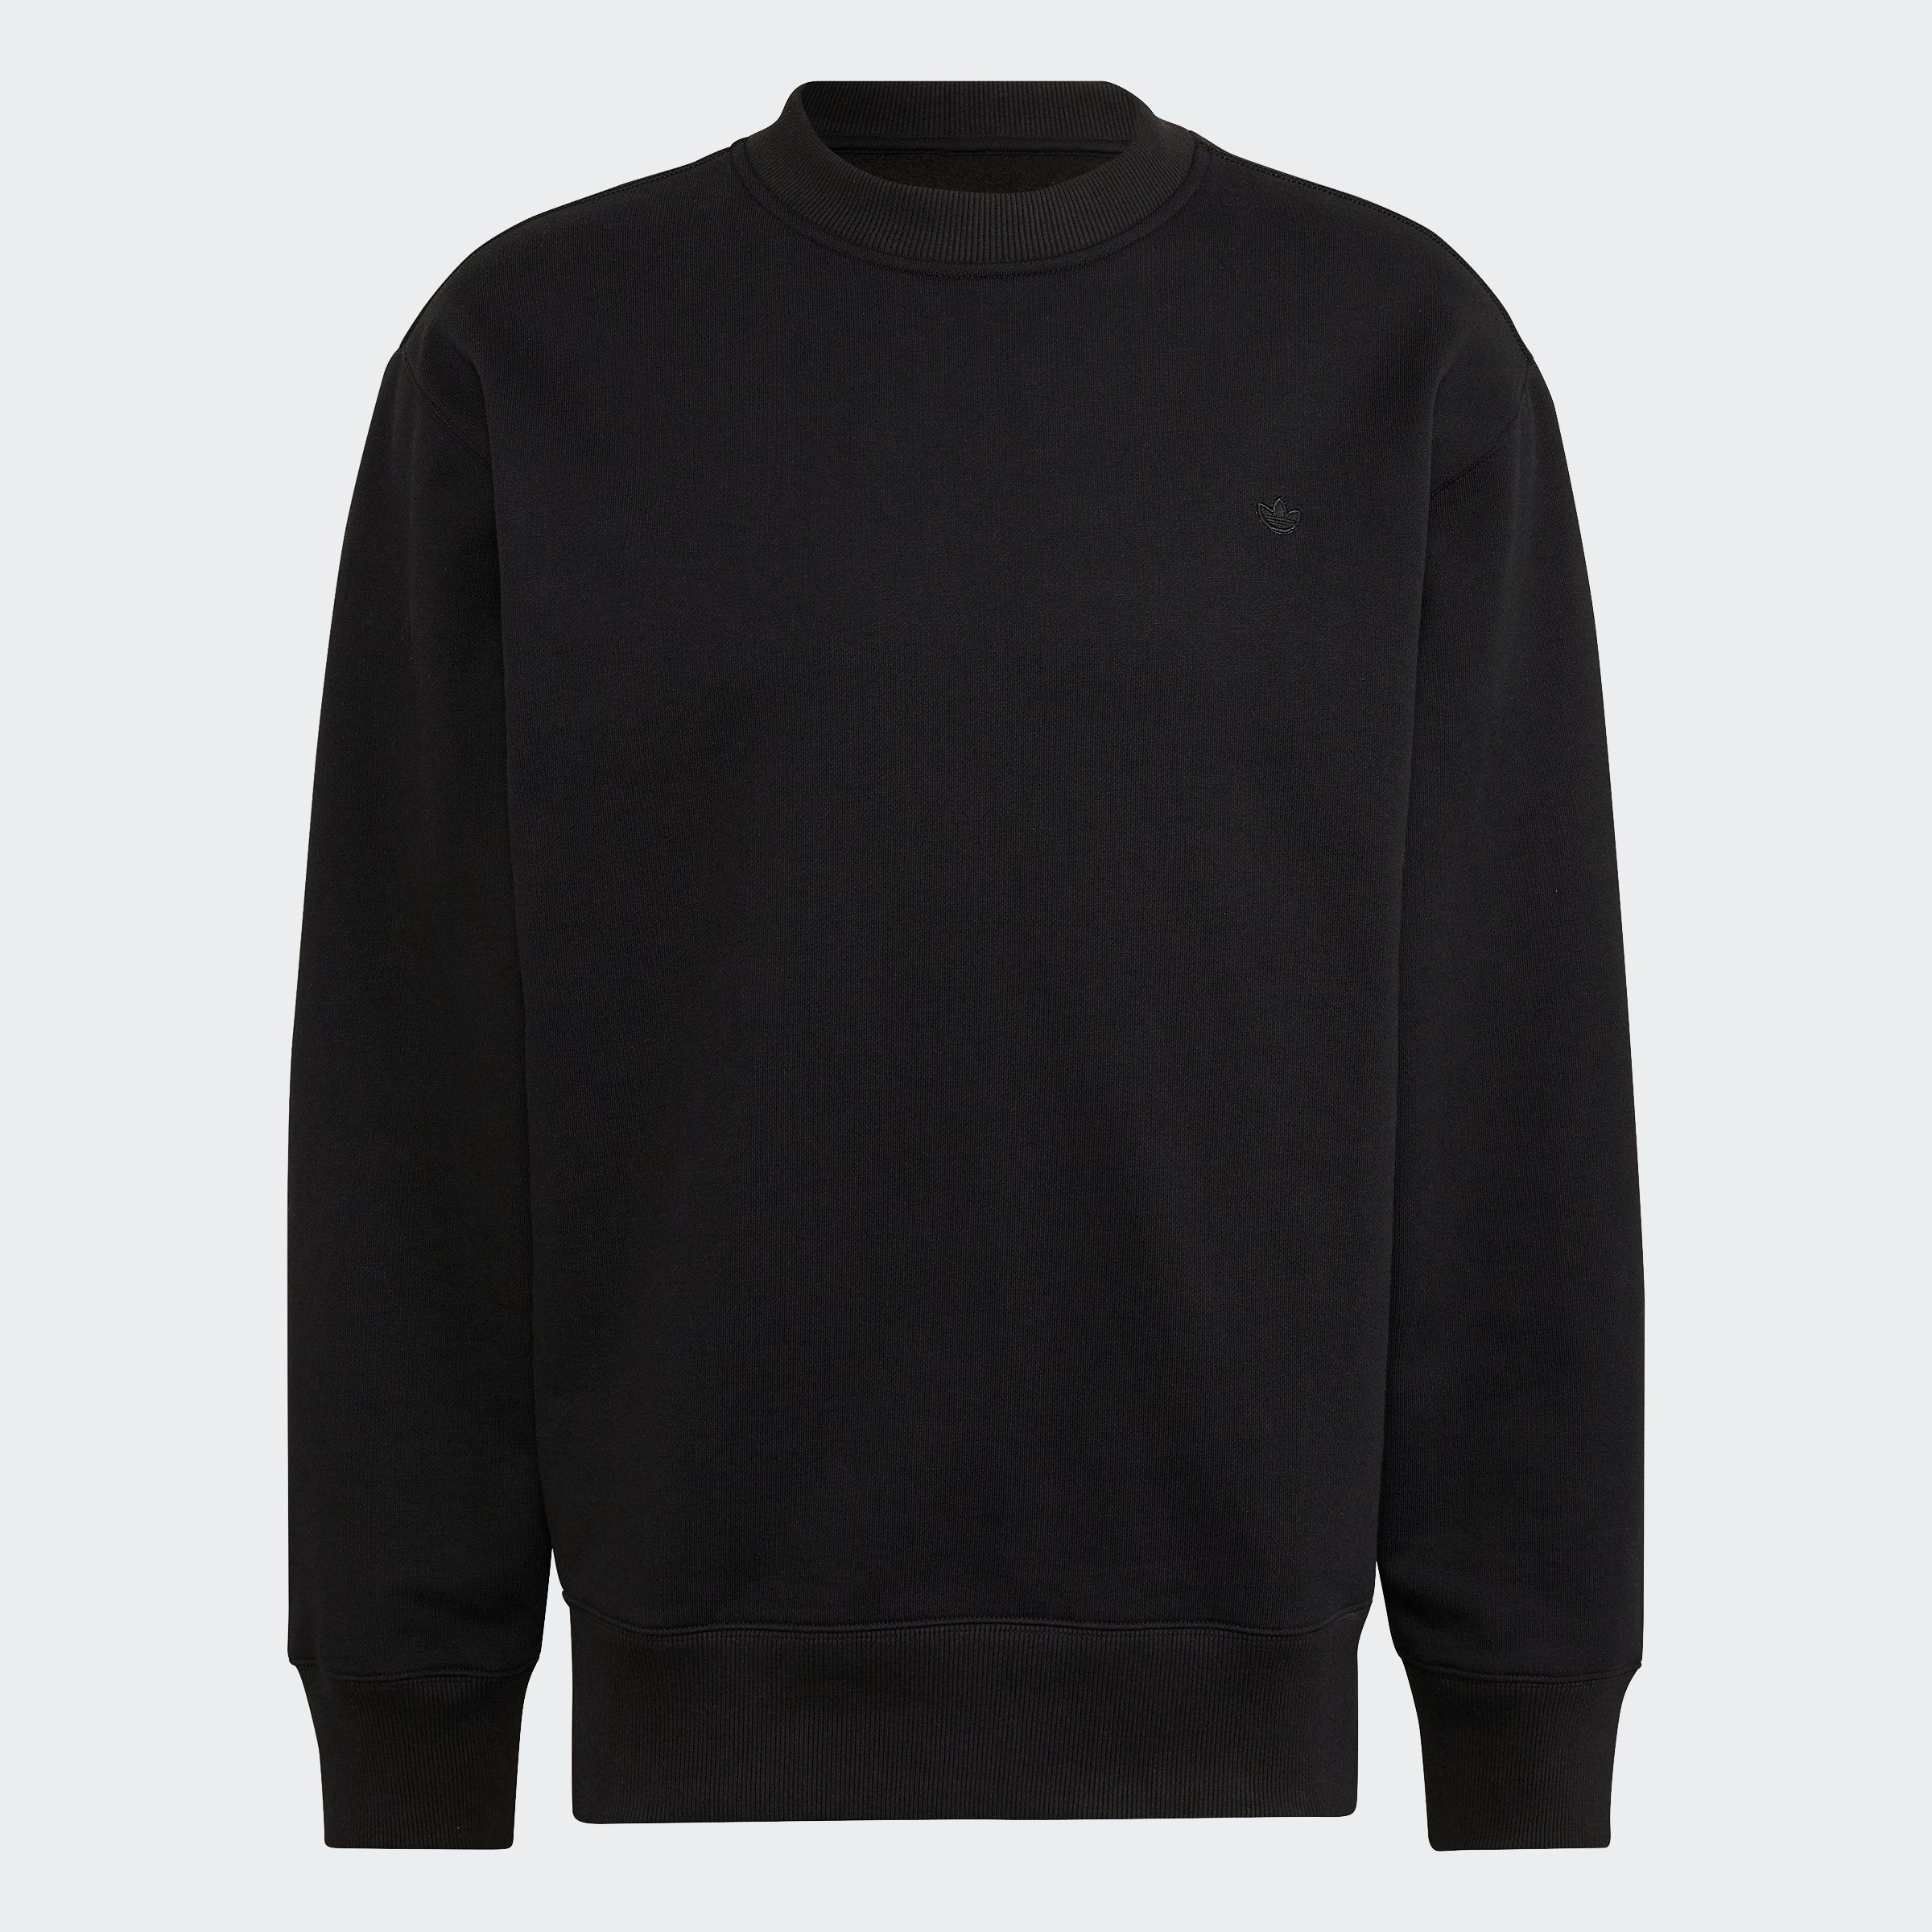 Originals Crew Sweatshirt adidas black C